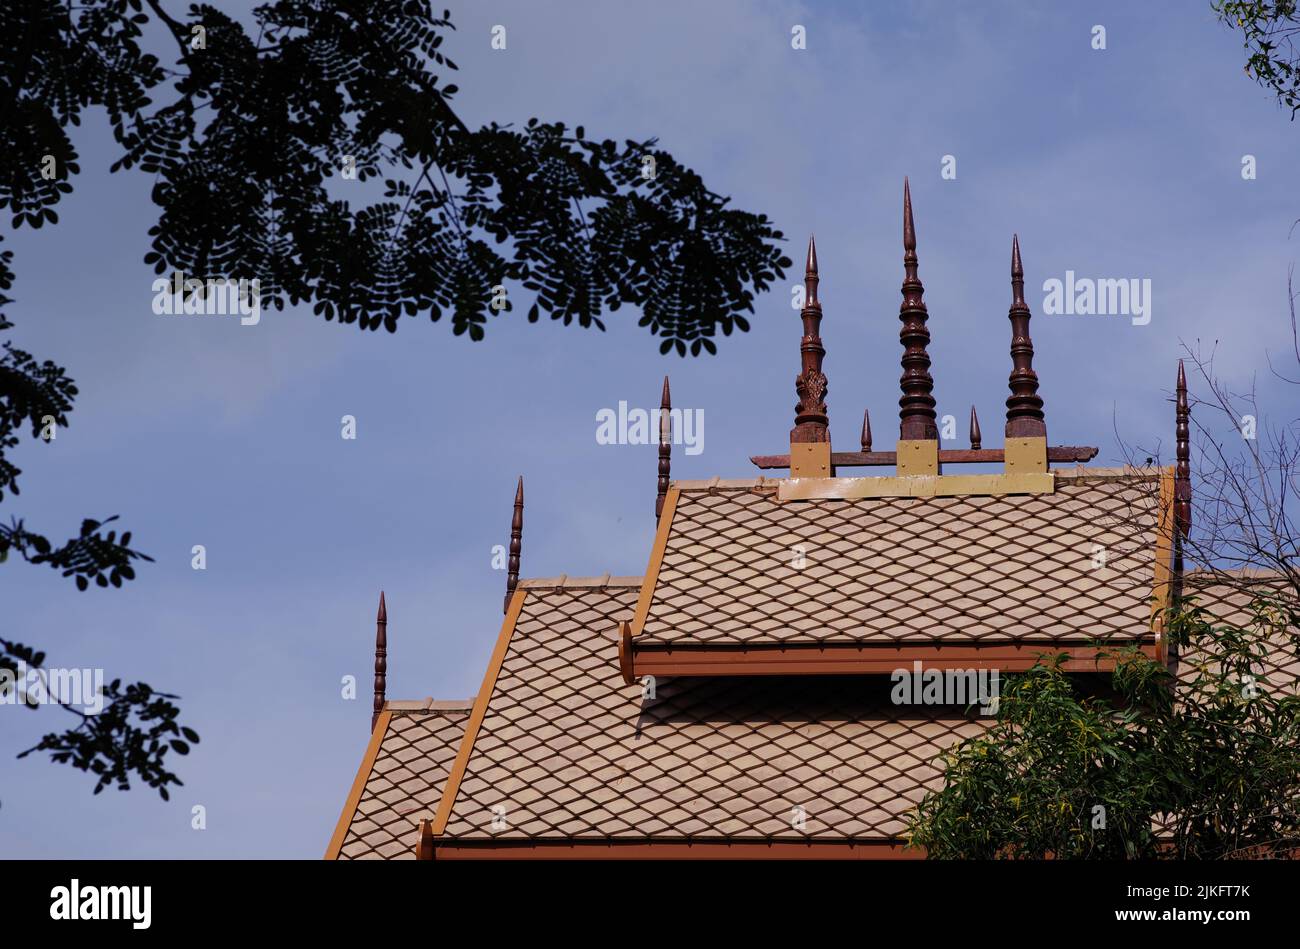 El techo de tejas de un templo en el sudeste asiático Foto de stock